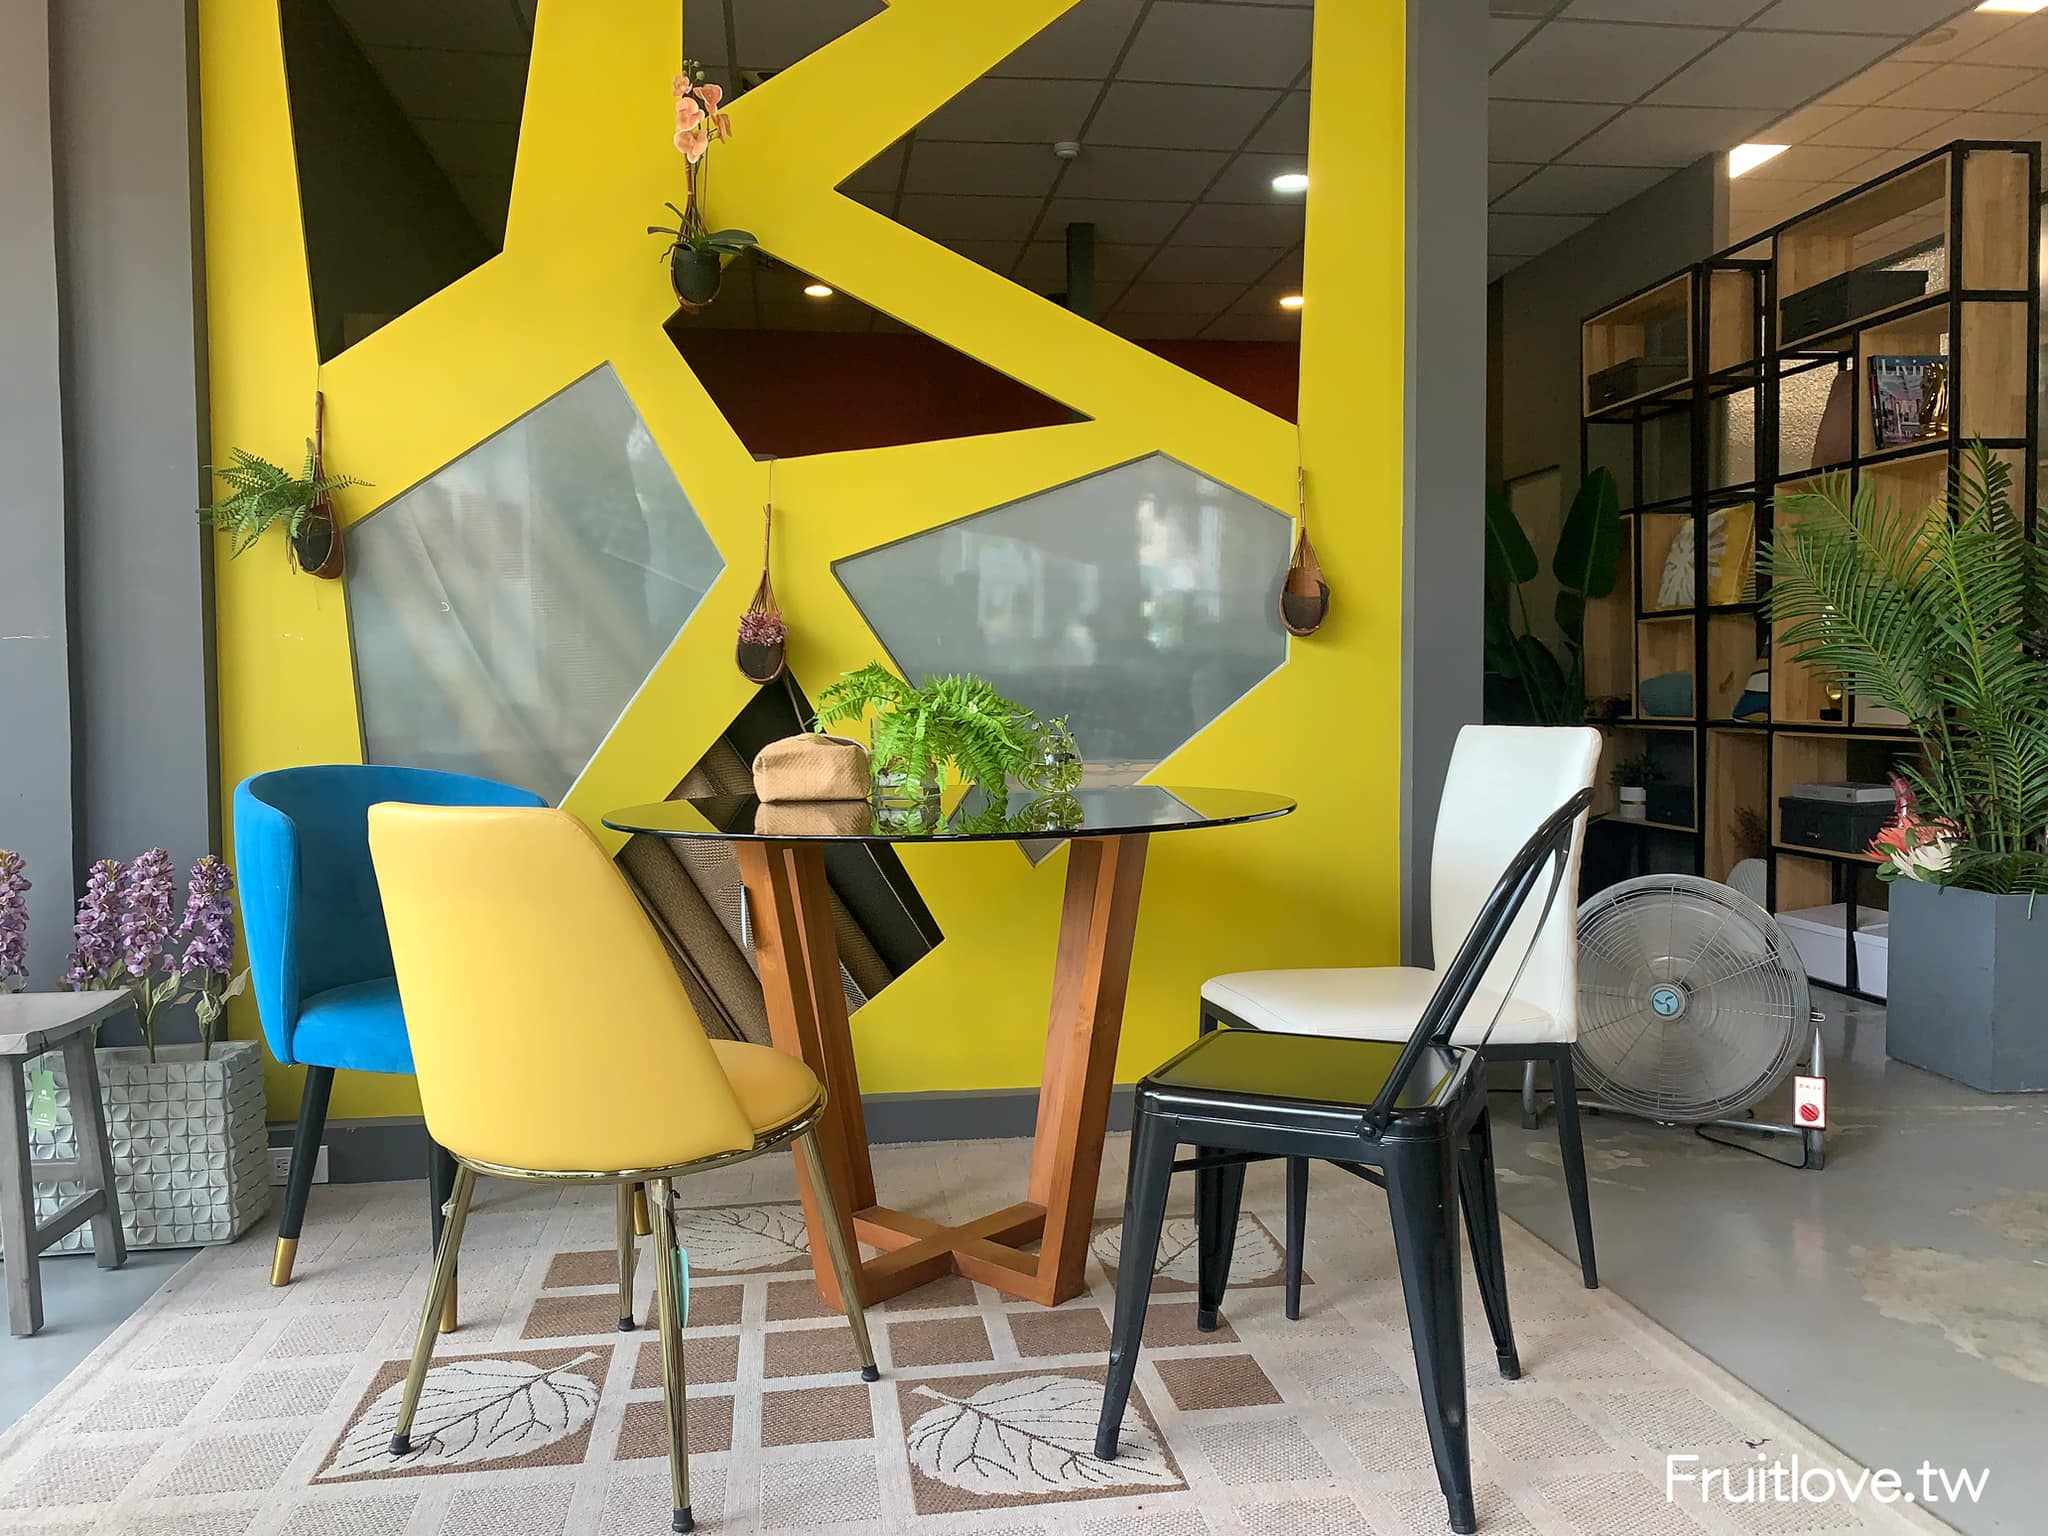 Rhino Cafe 犀牛咖啡-台中咖啡⟩與室內設計結合的特色咖啡廳，內用消費不限時-台中南區美食/ 寵物友善咖啡廳 @果果愛Fruitlove